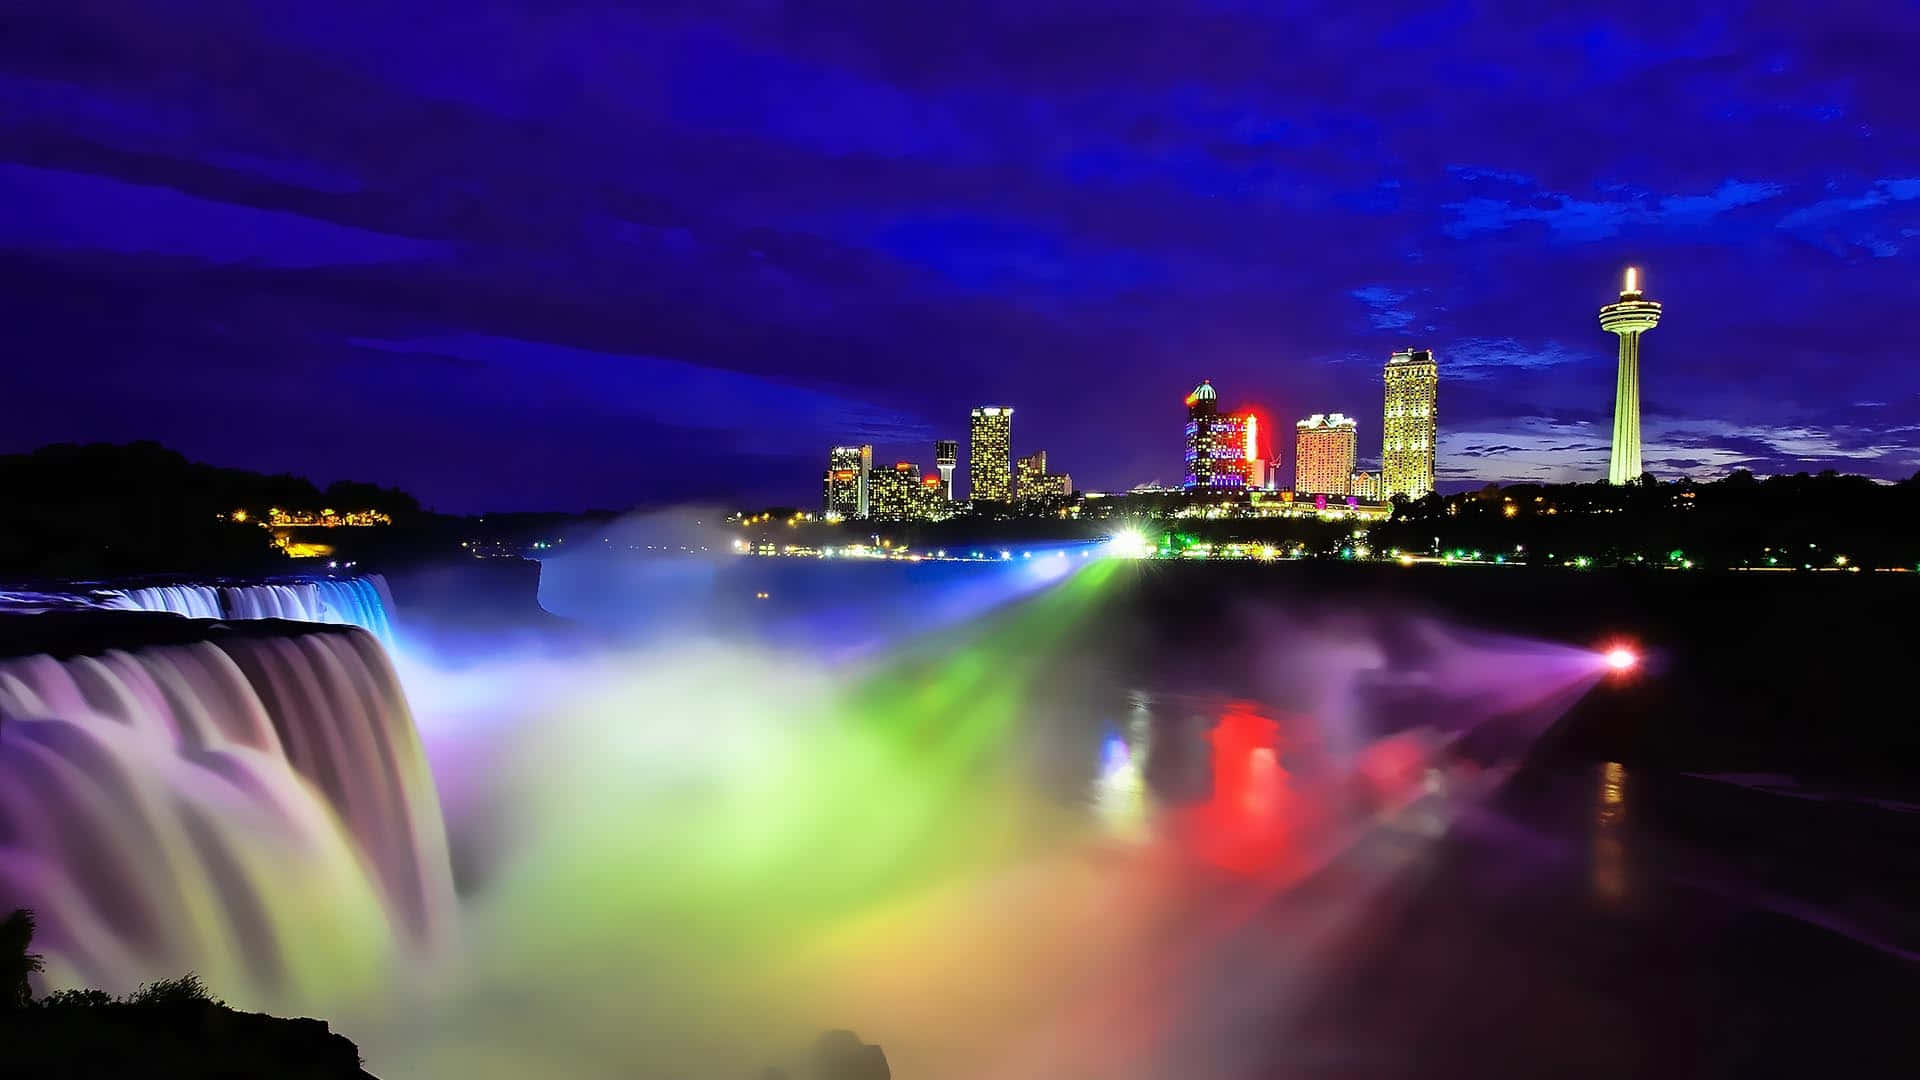 Färggladnattbelysning Vid Niagara Falls I Kanada. Wallpaper